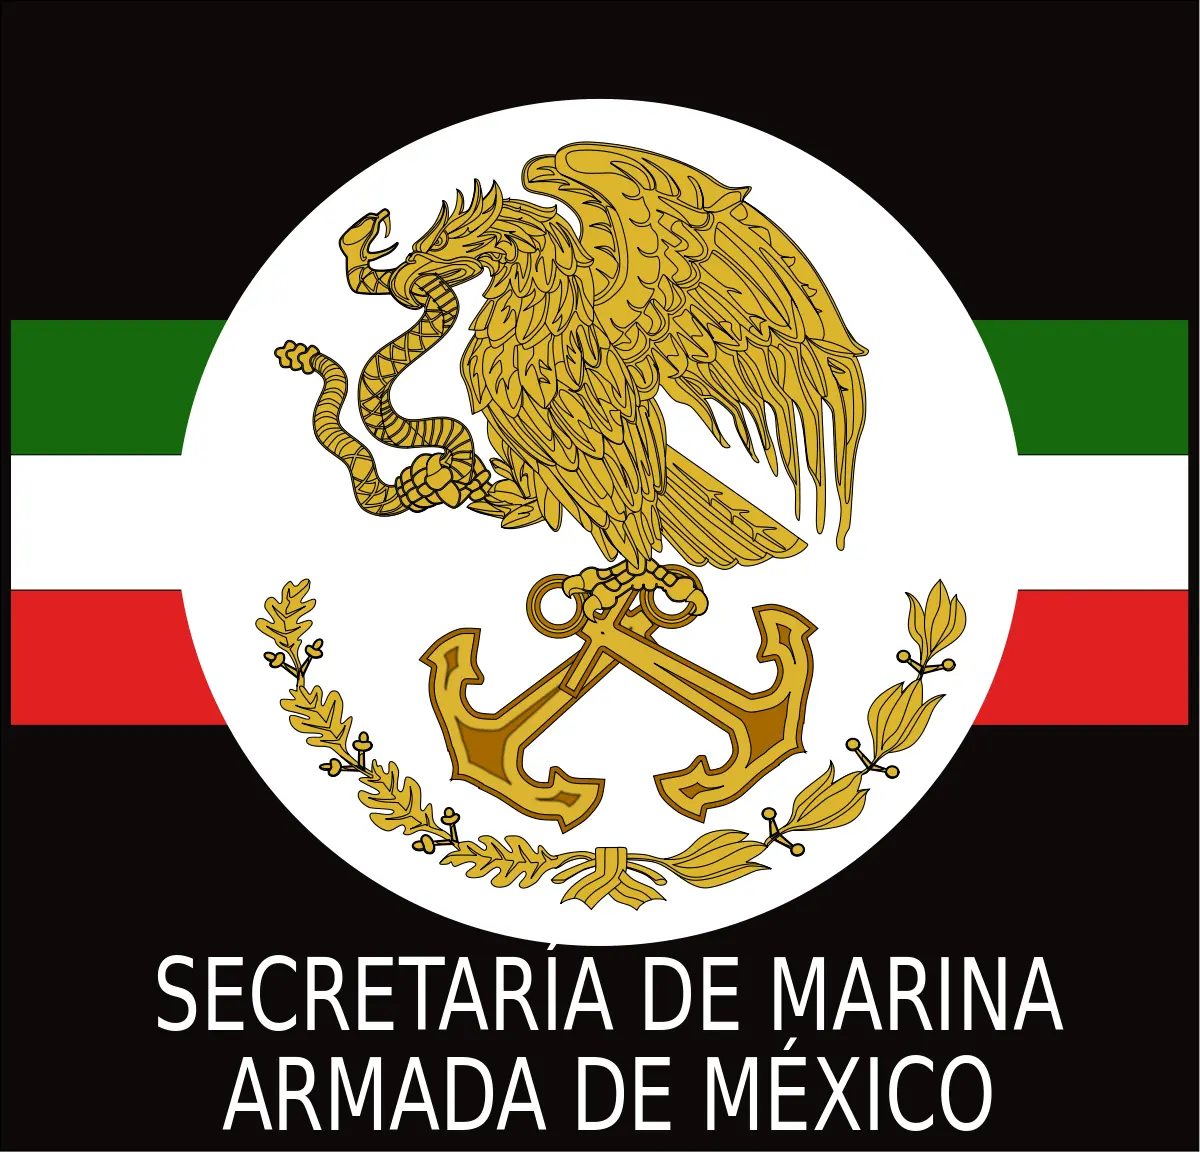 inteligencia naval mexico - Qué tan poderosa es la Armada de México